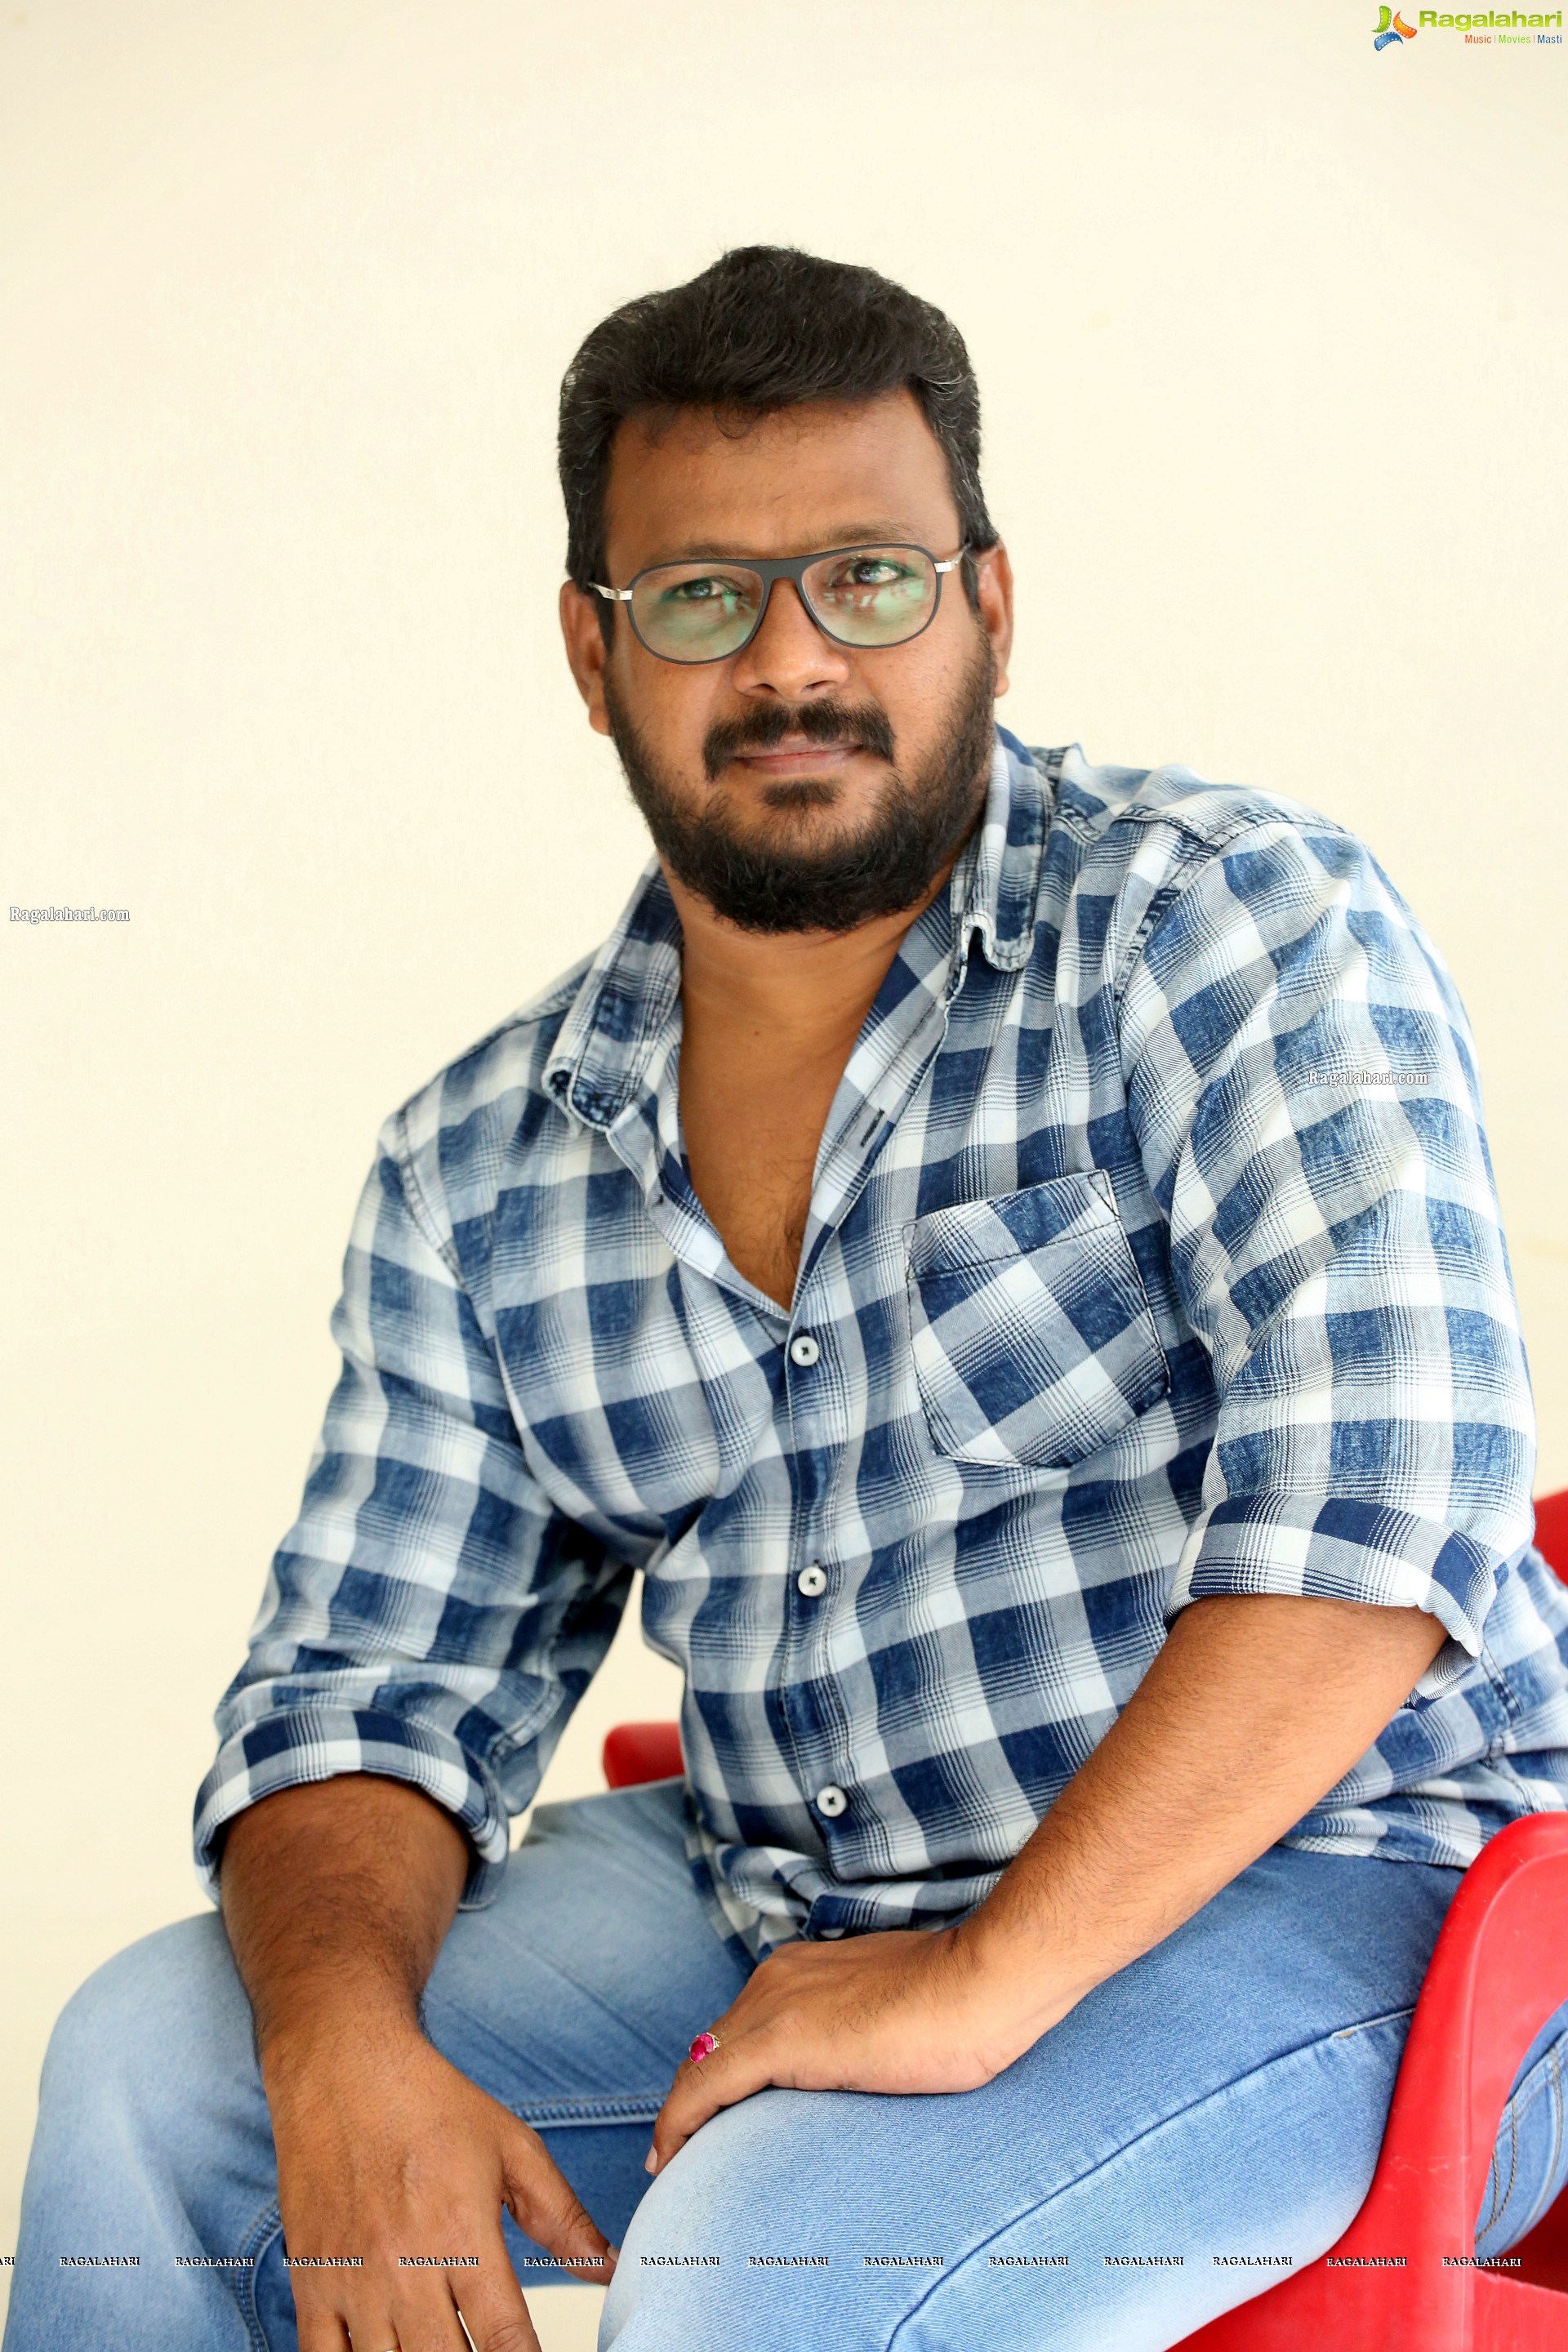 Director Y Yugandhar at Ippudu Kaka Inkeppudu Interview